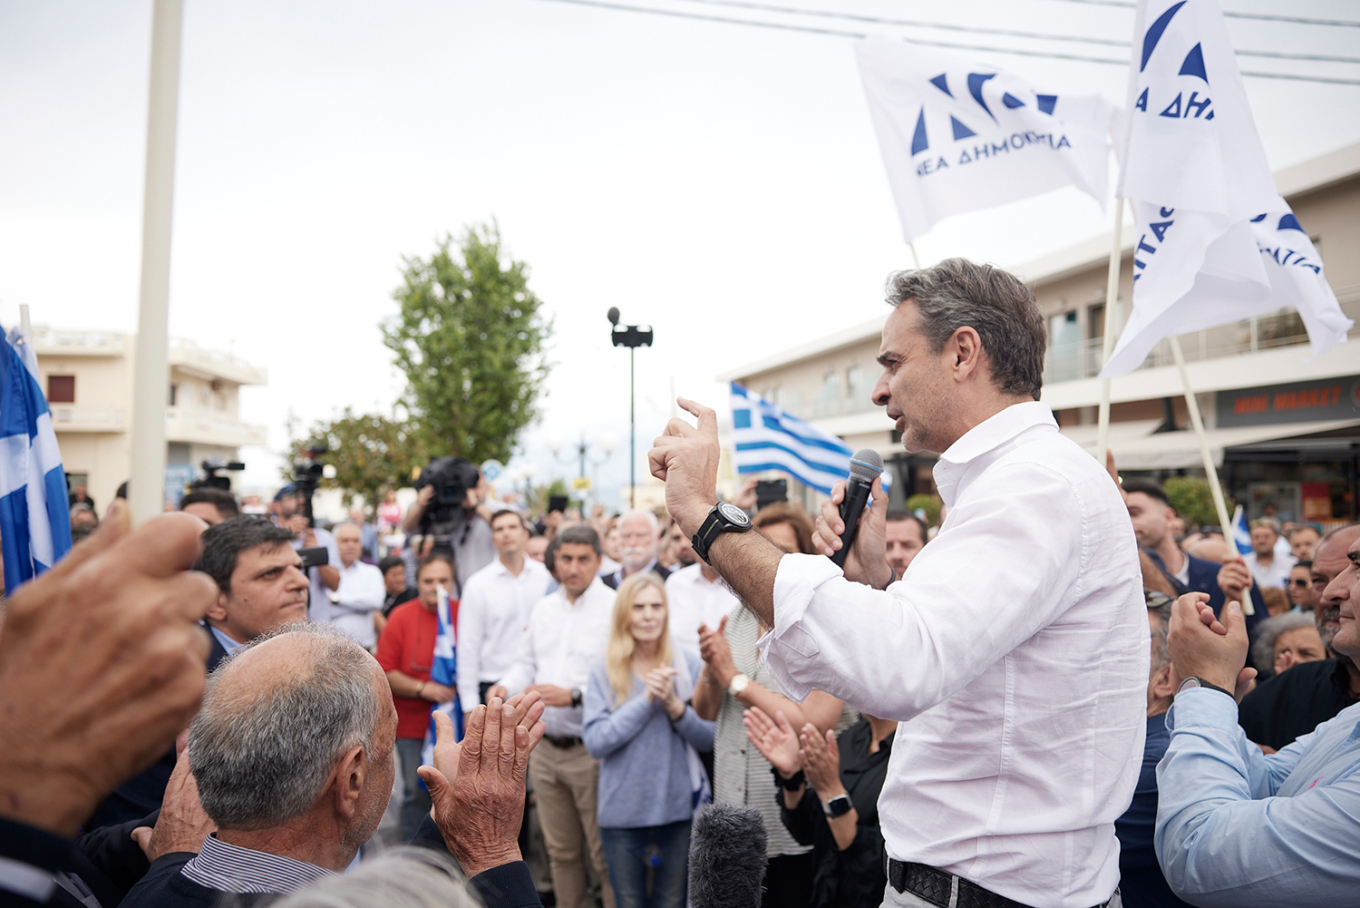 Μητσοτάκης από Χανιά: Στις 25 Ιουνίου κρίνεται ποιος θα είναι πρωθυπουργός και όχι ποιος θα κάνει αντιπολίτευση (Photos)